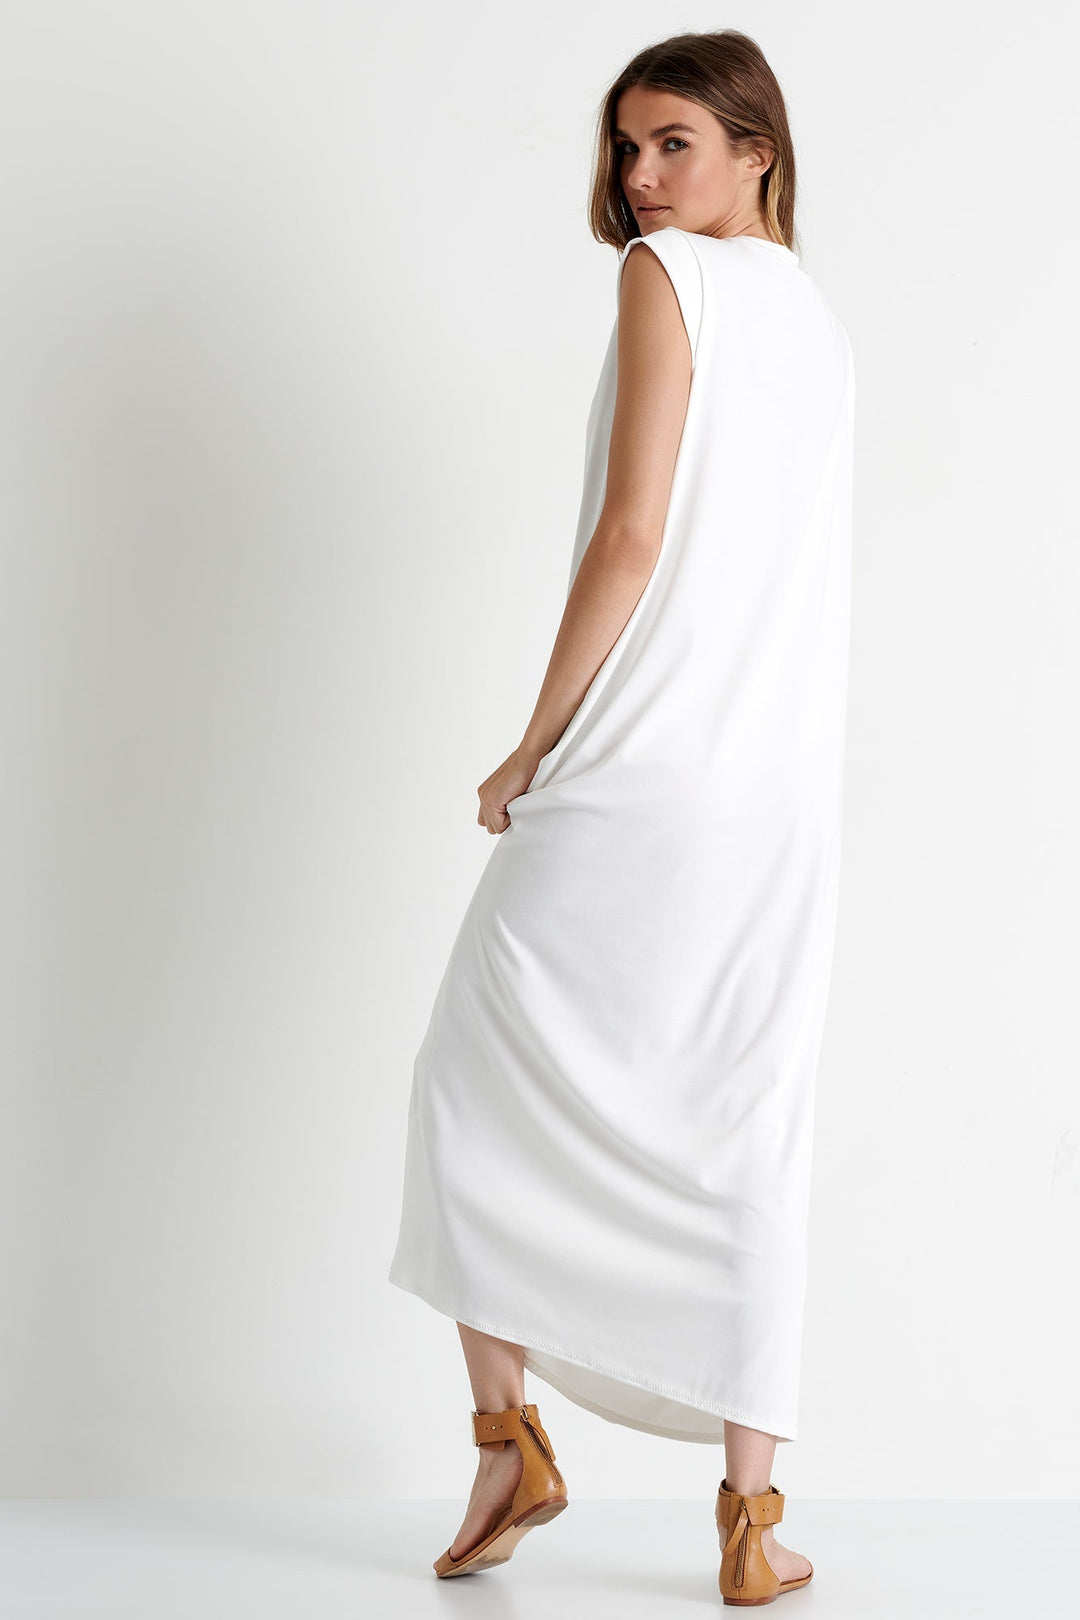 Maxi Dress 2 / 000 White / 90% POLYESTER, 10% ELASTANE